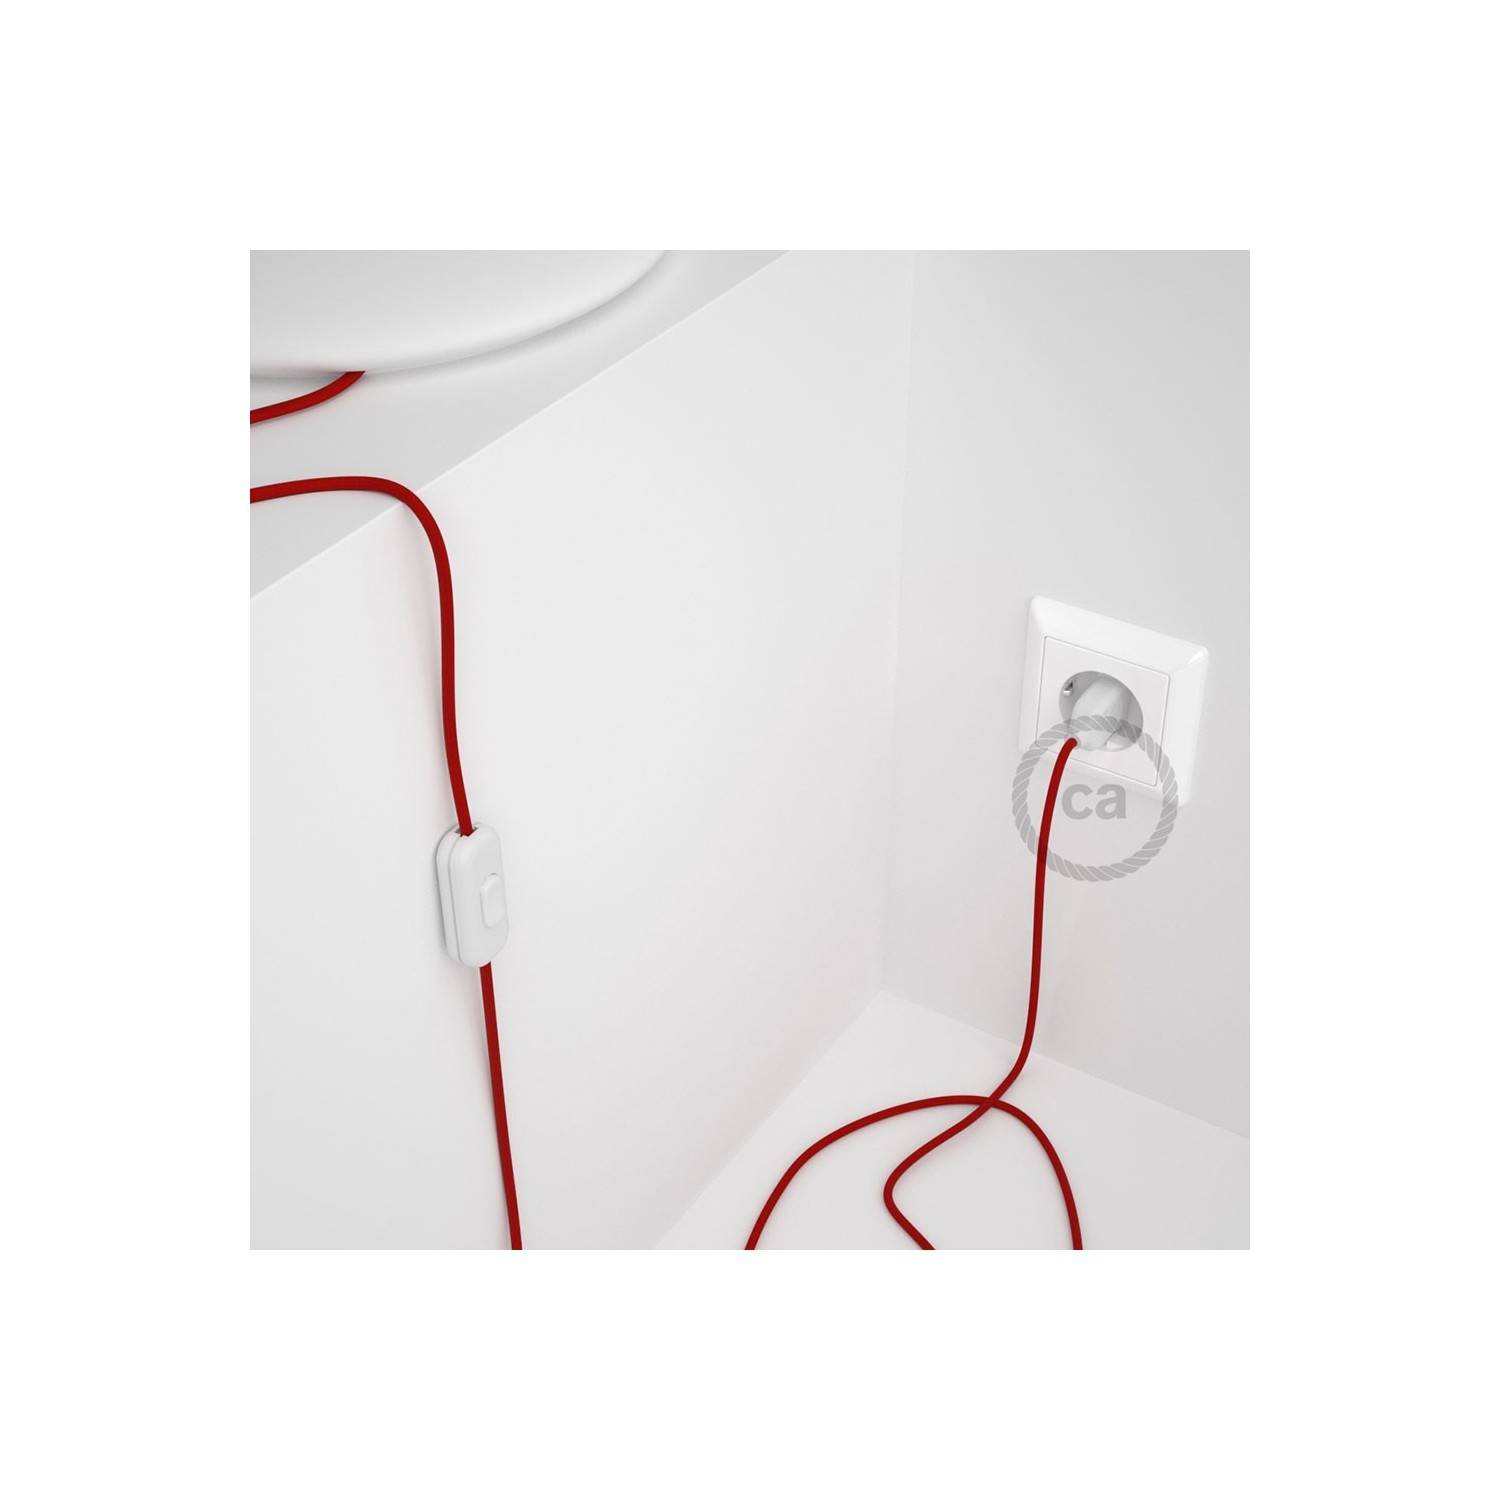 Cableado para lámpara, cable RM09 Efecto Seda Rojo 1,8m. Elige tu el color de la clavija y del interruptor!